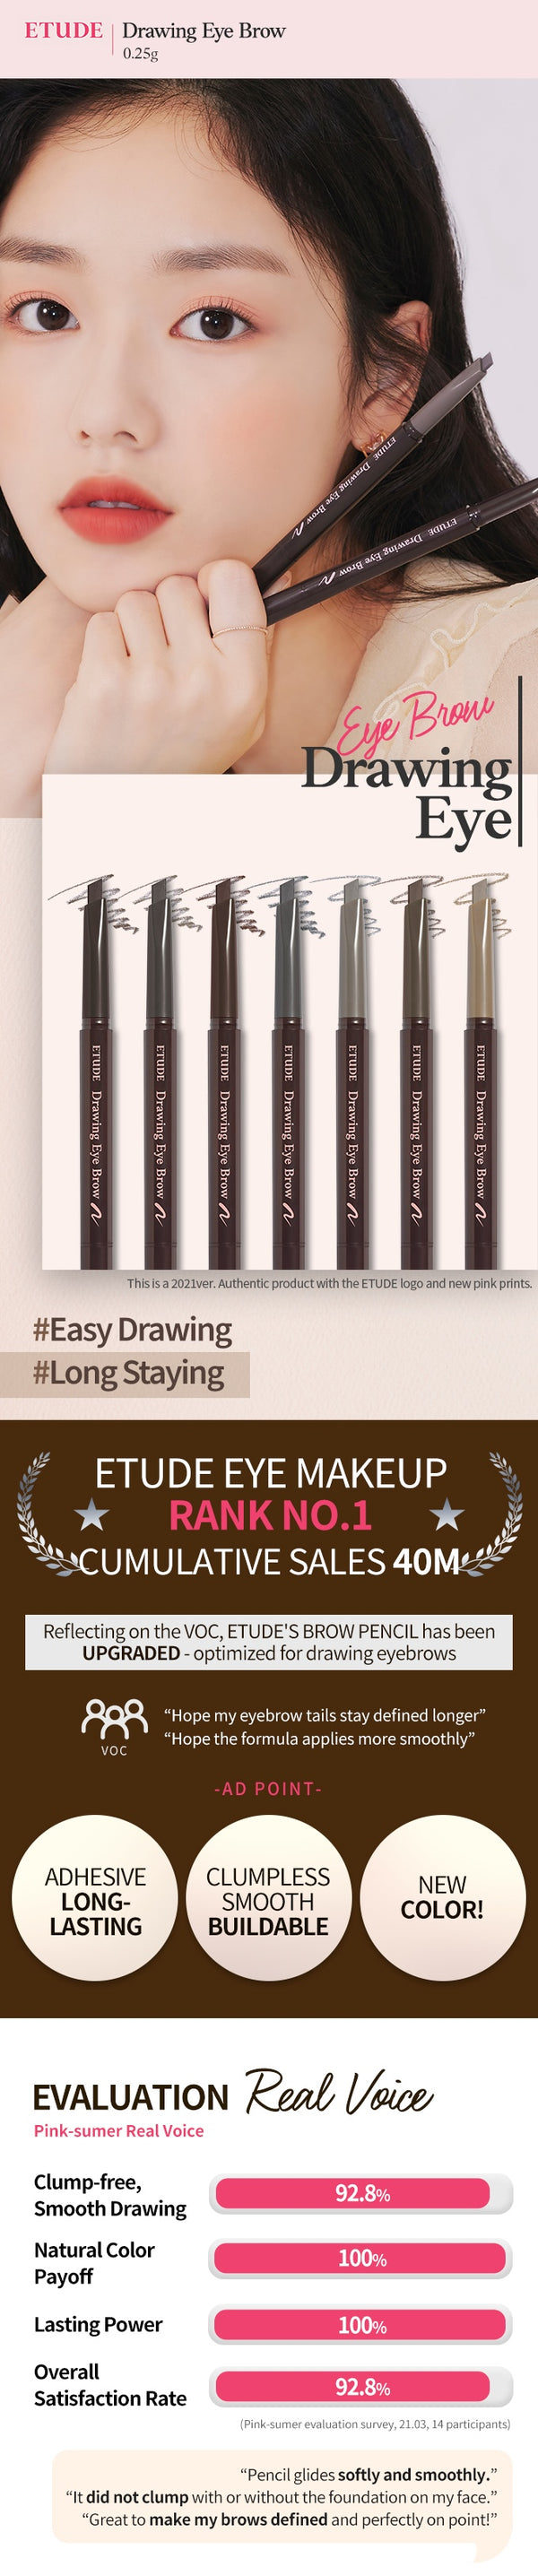 ETUDE HOUSE Drawing Eye Brow